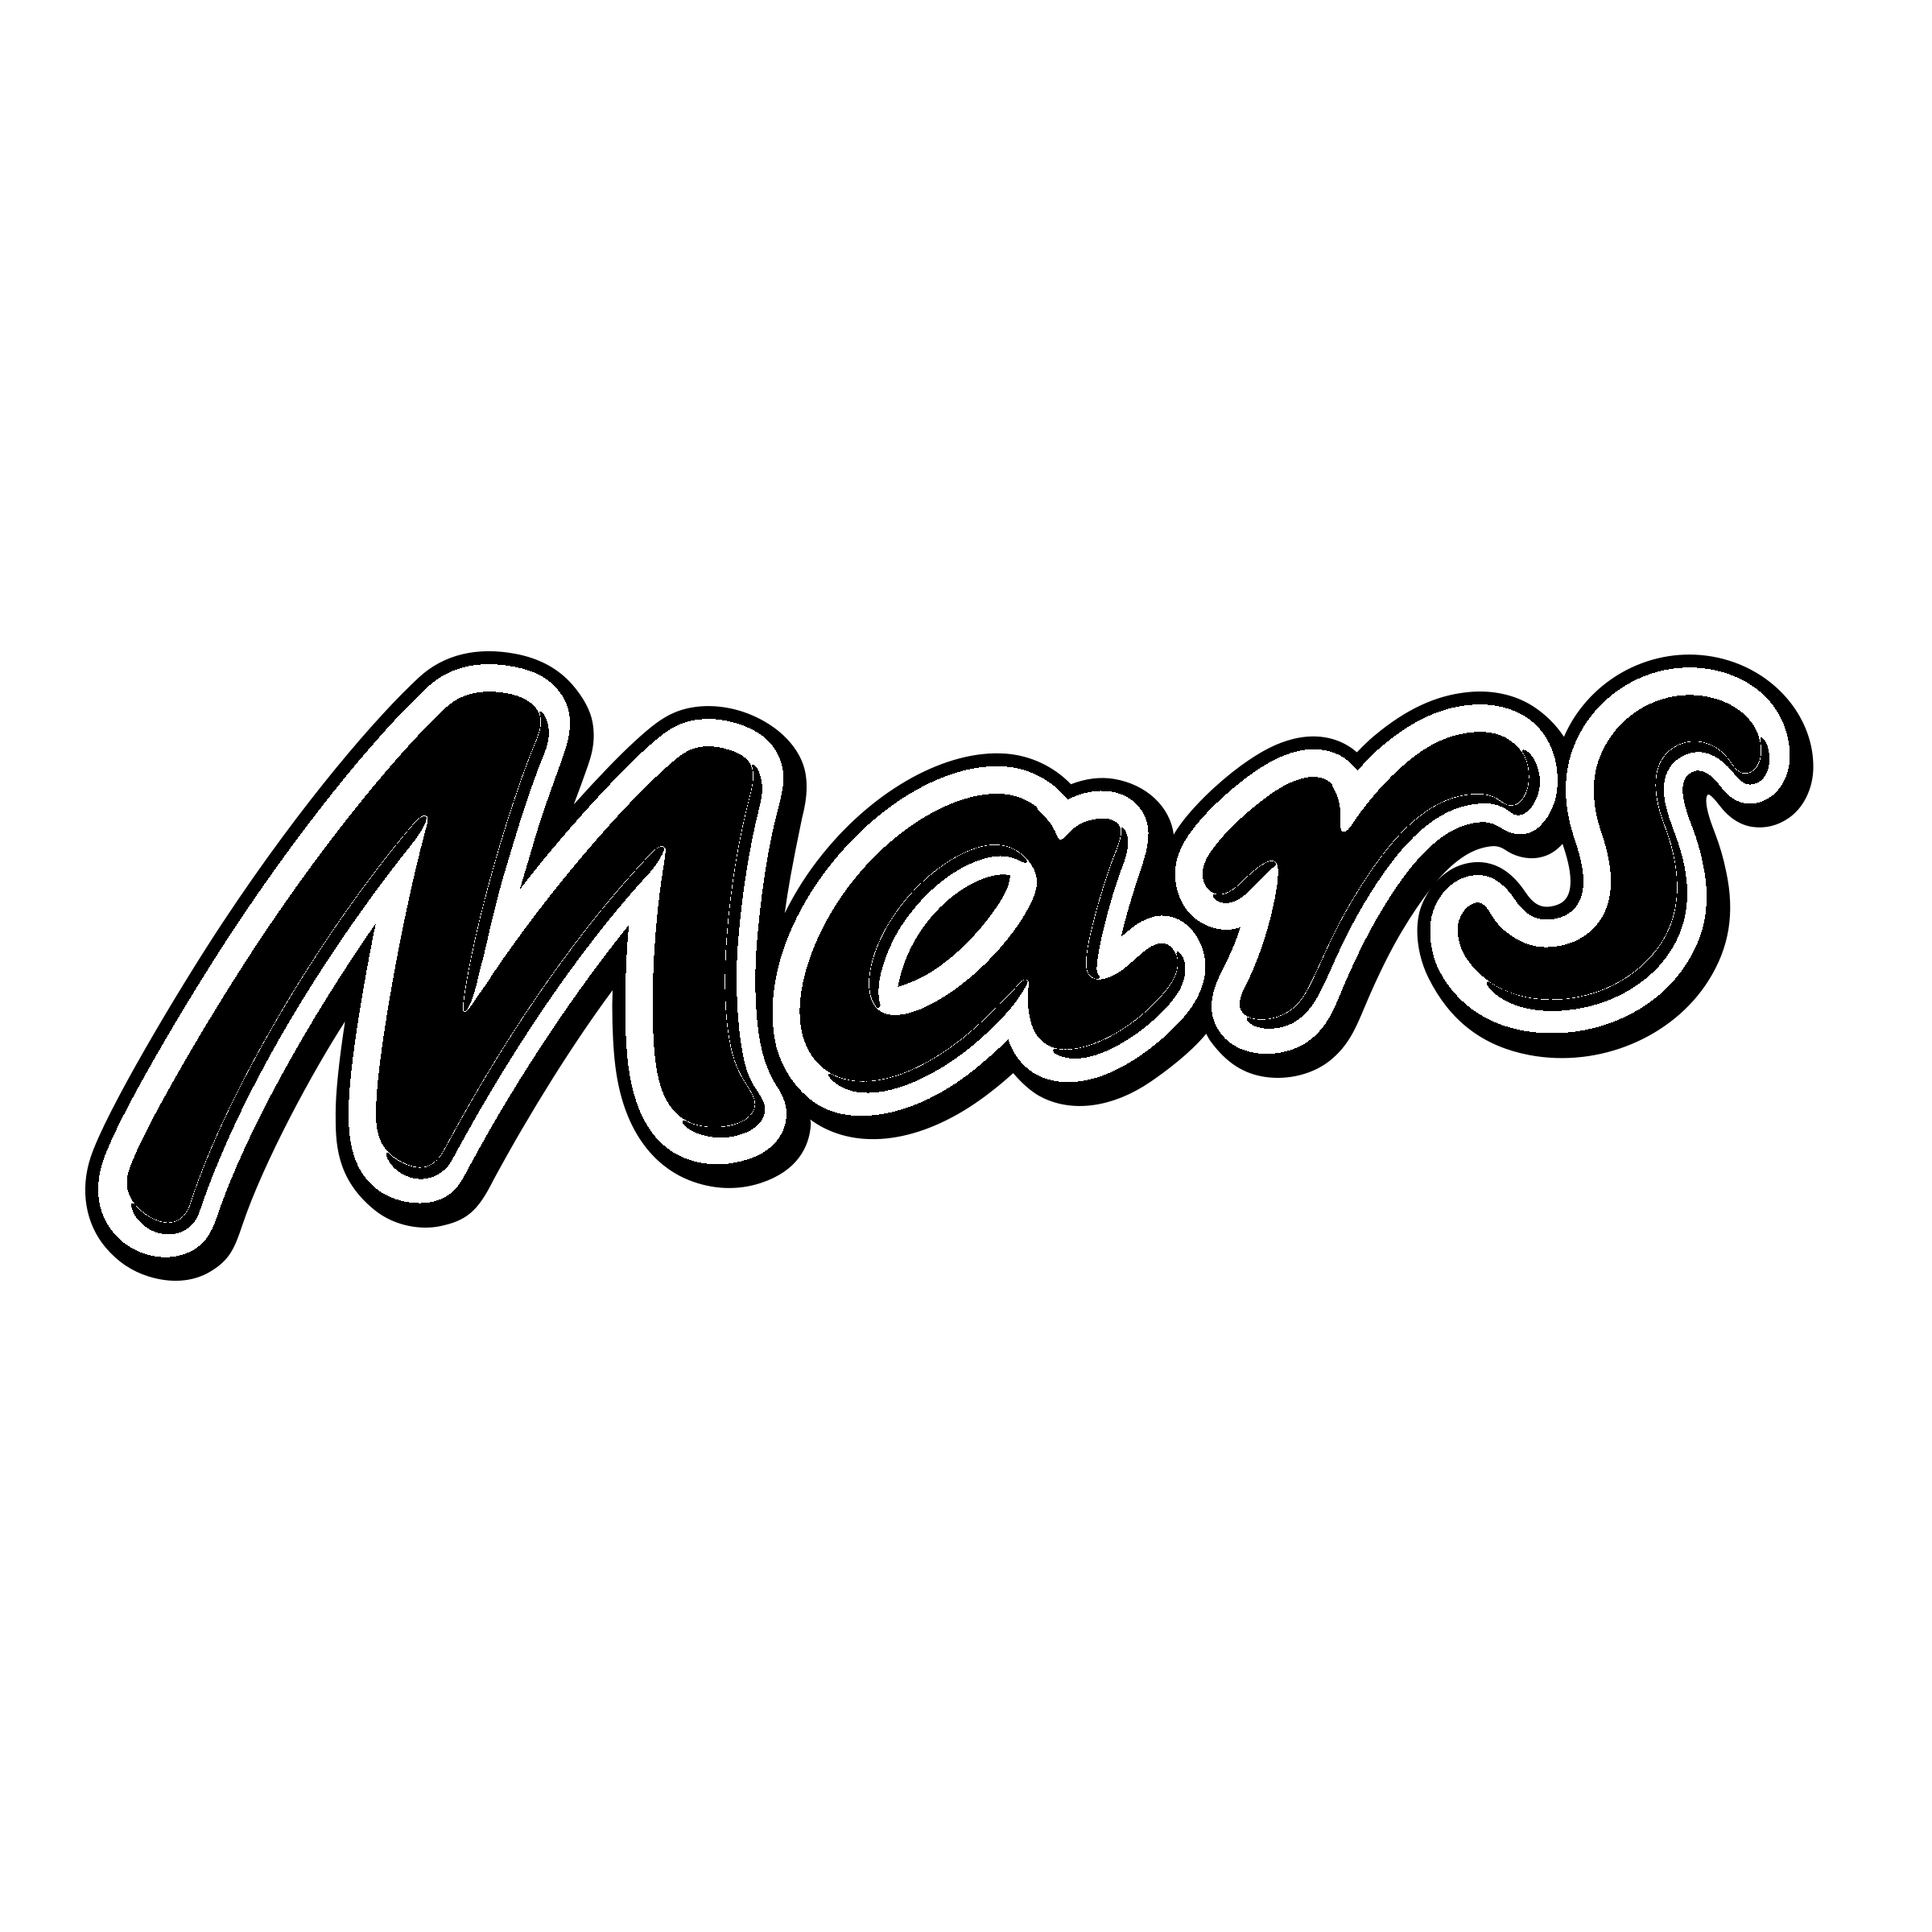 5 Black Logo - Mars Logo PNG Transparent & SVG Vector - Freebie Supply